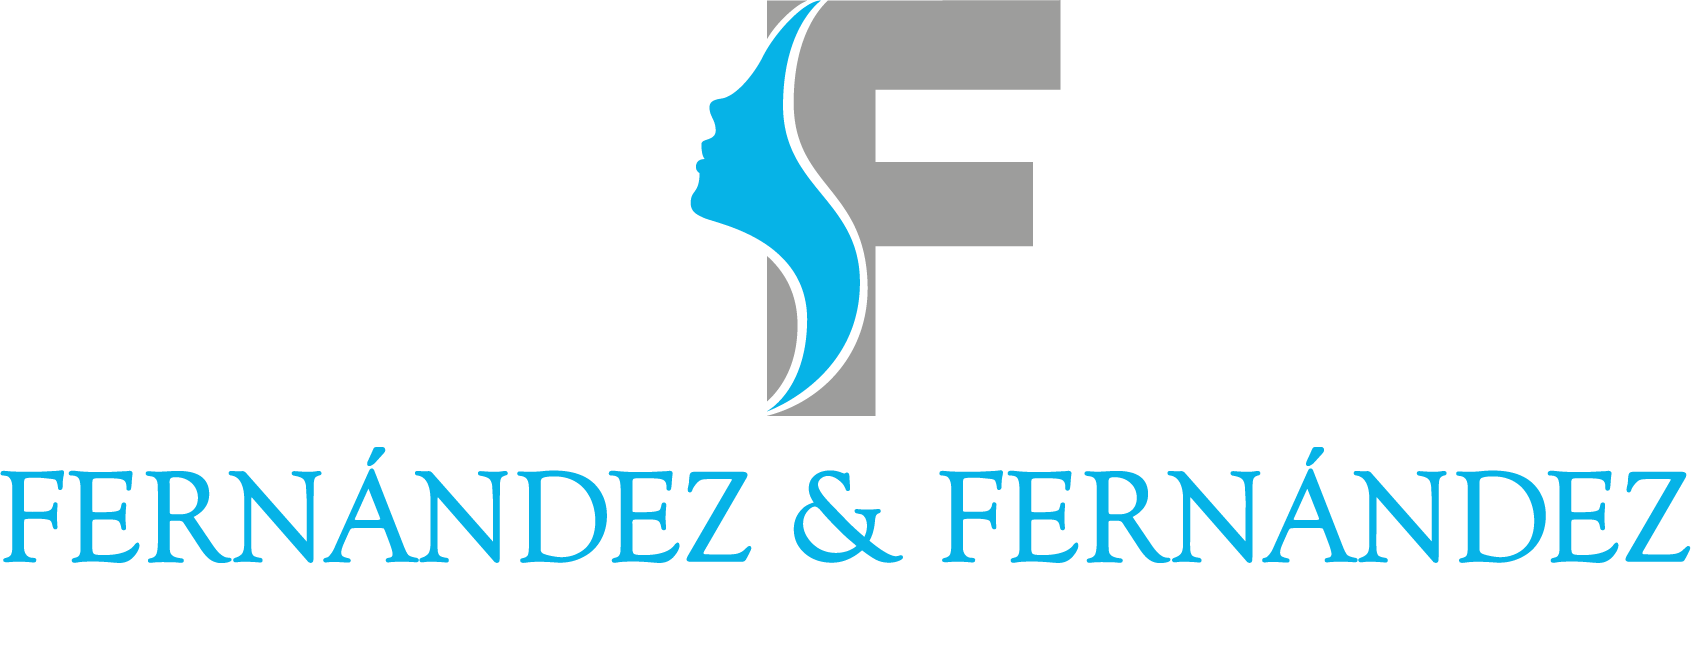 Fernández & Fernández Cirugía Plástica